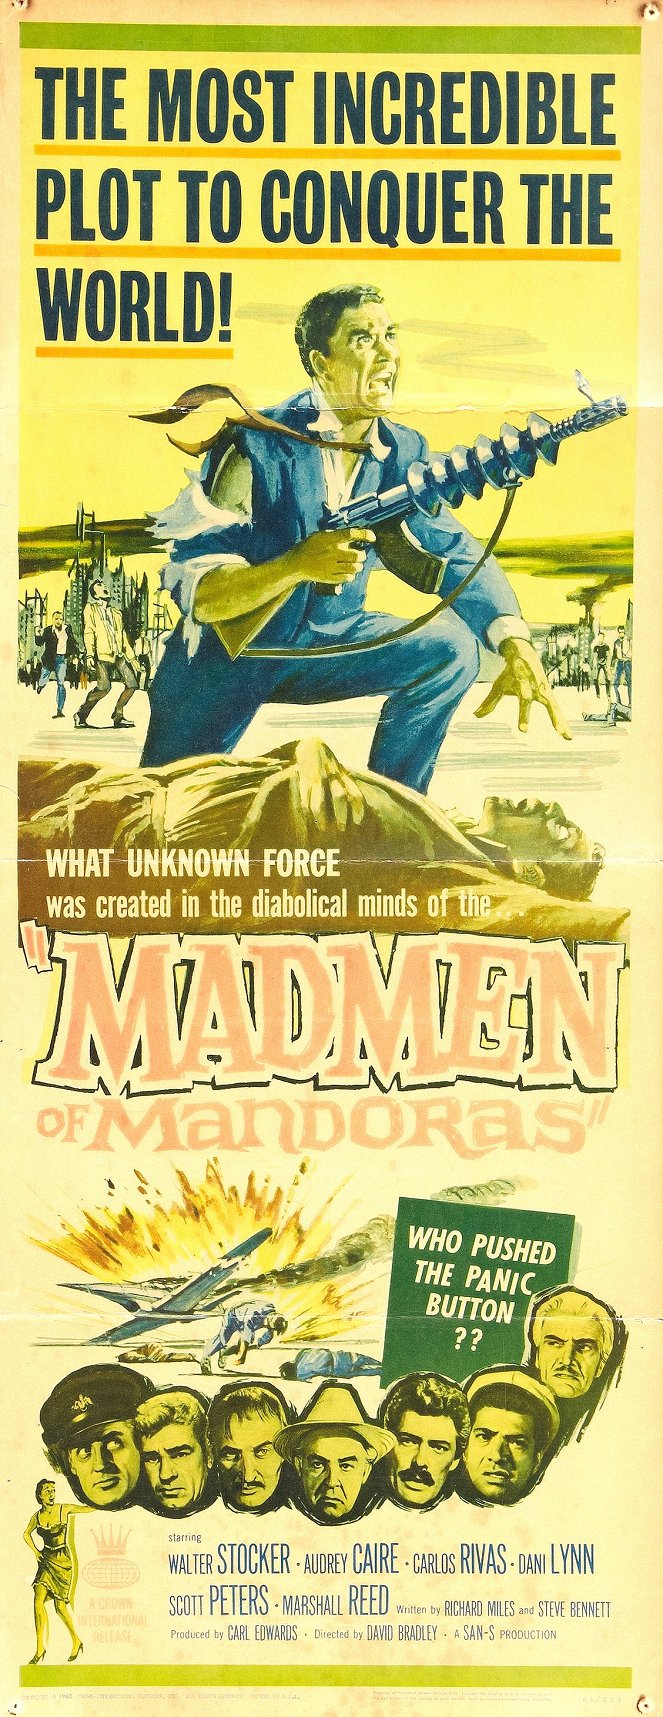 The Madmen of Mandoras - Cartazes